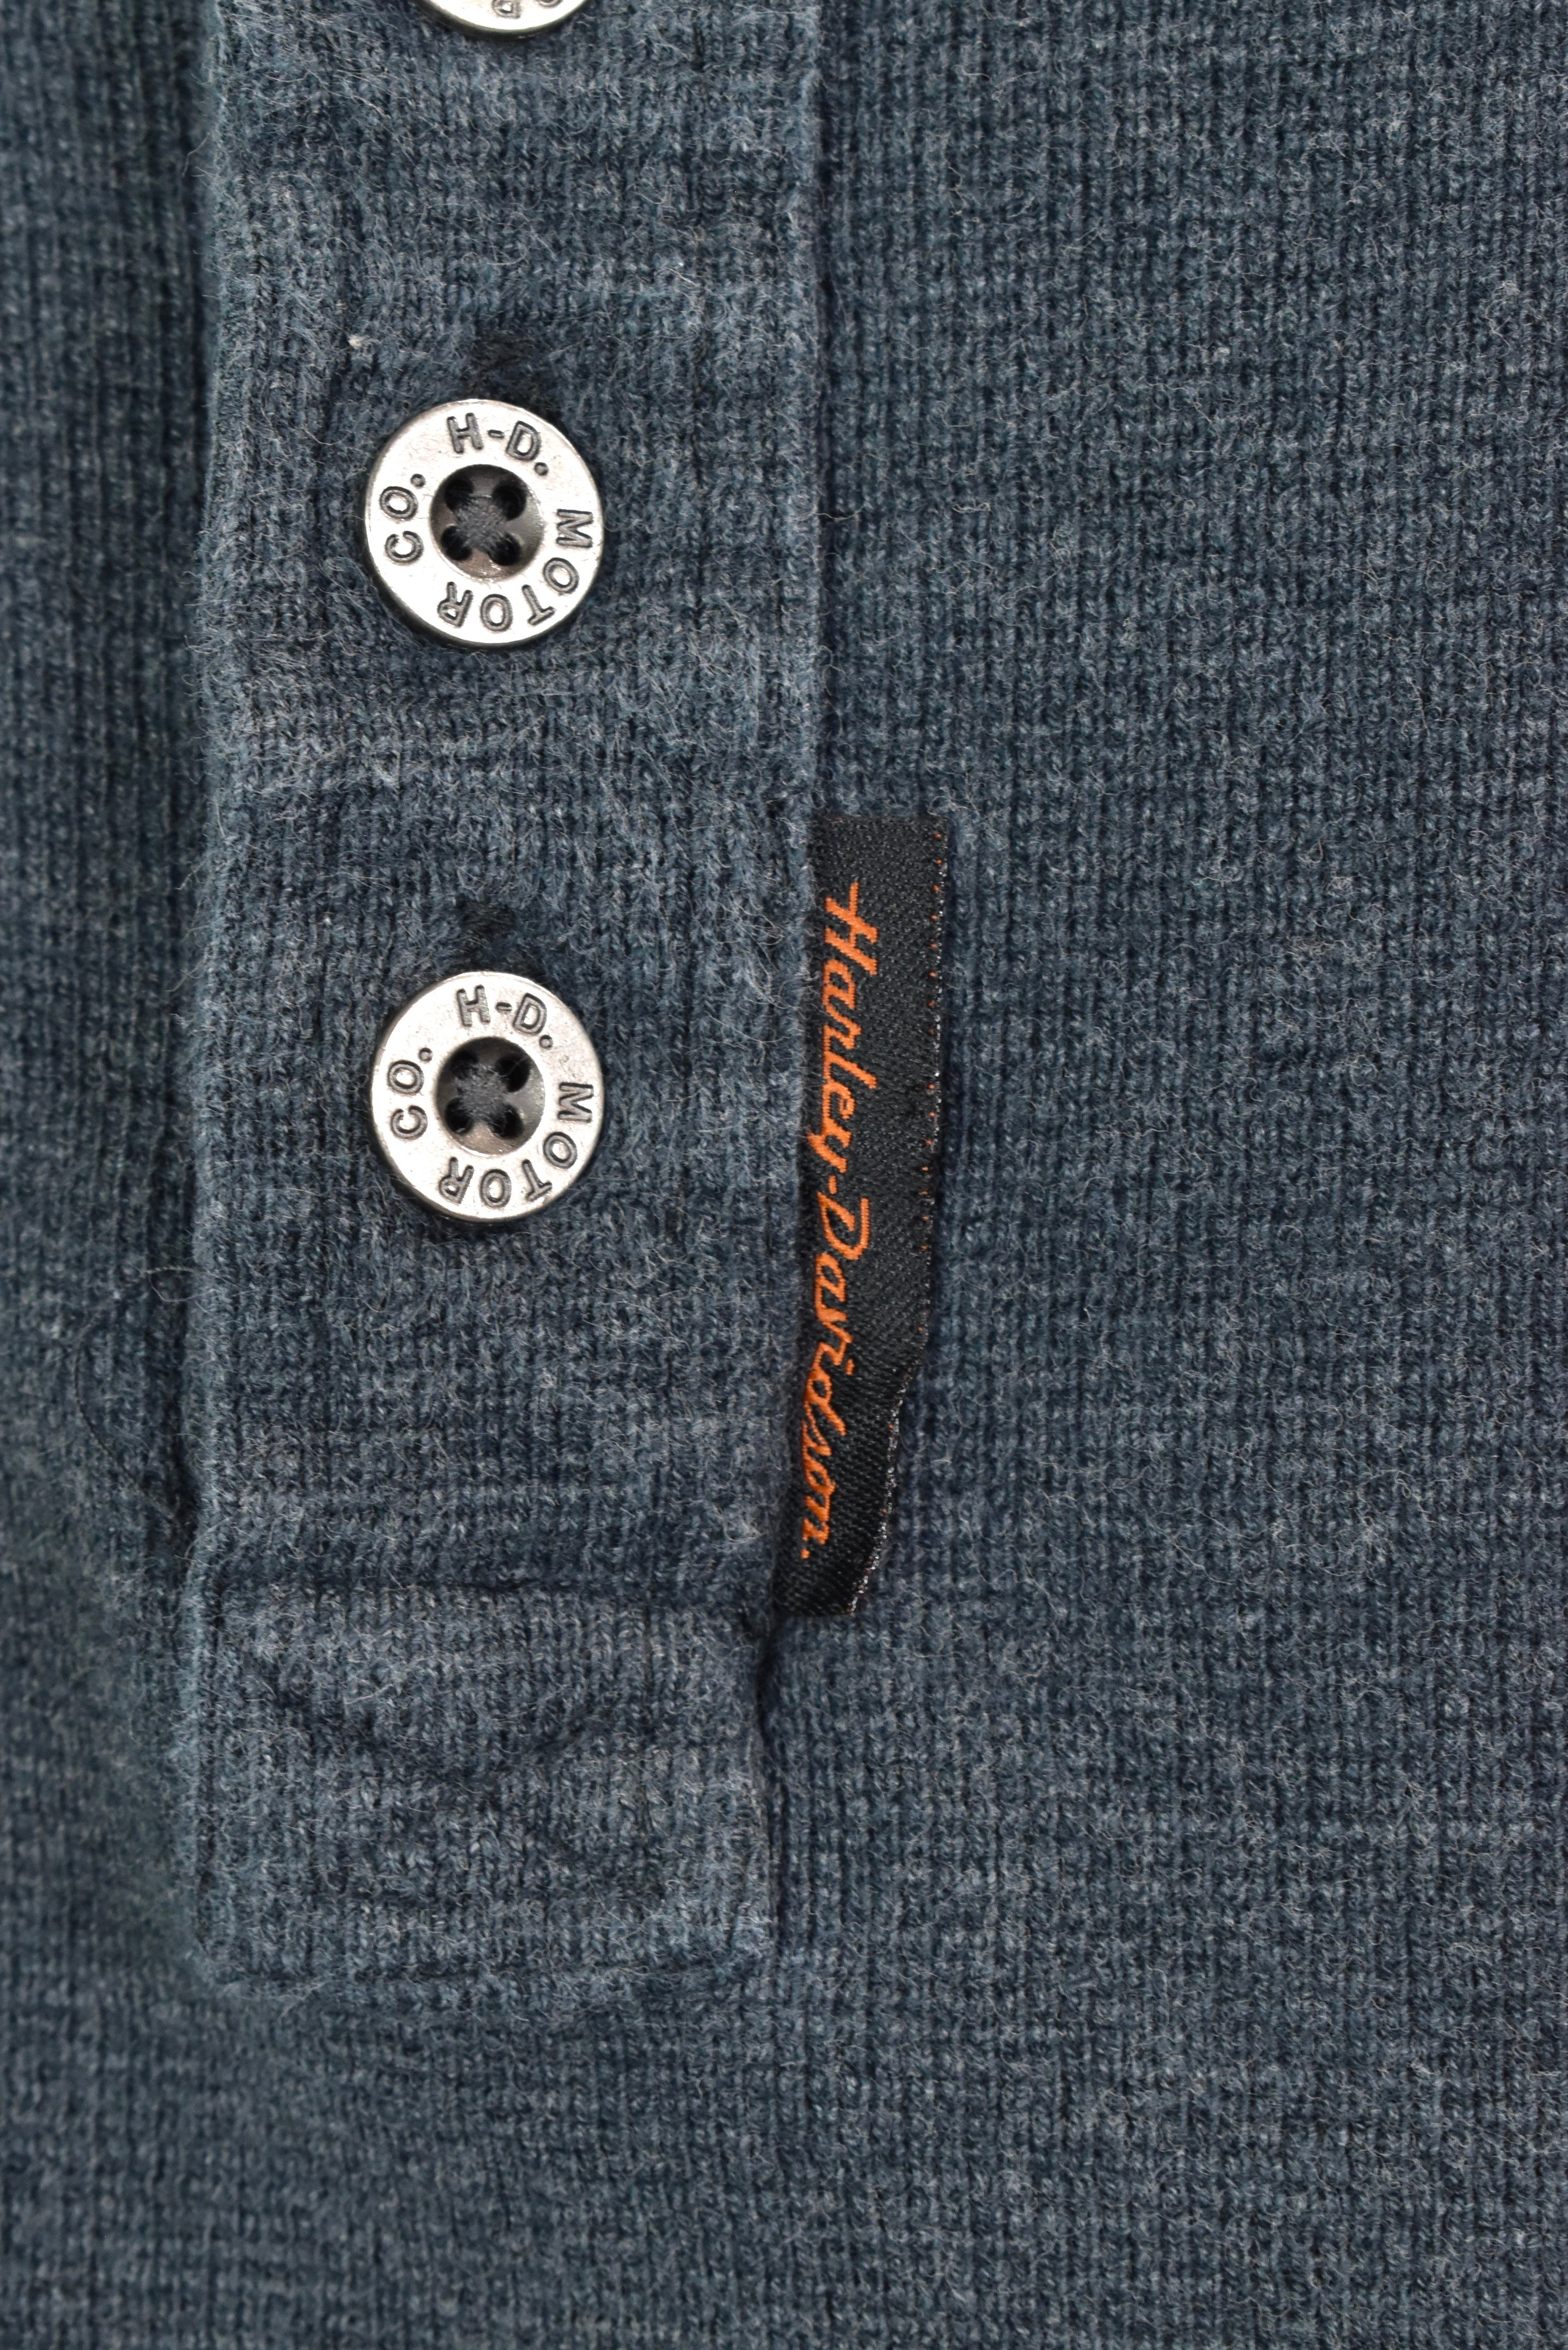 Vintage Harley Davidson embroidered grey sweatshirt | XXL HARLEY DAVIDSON